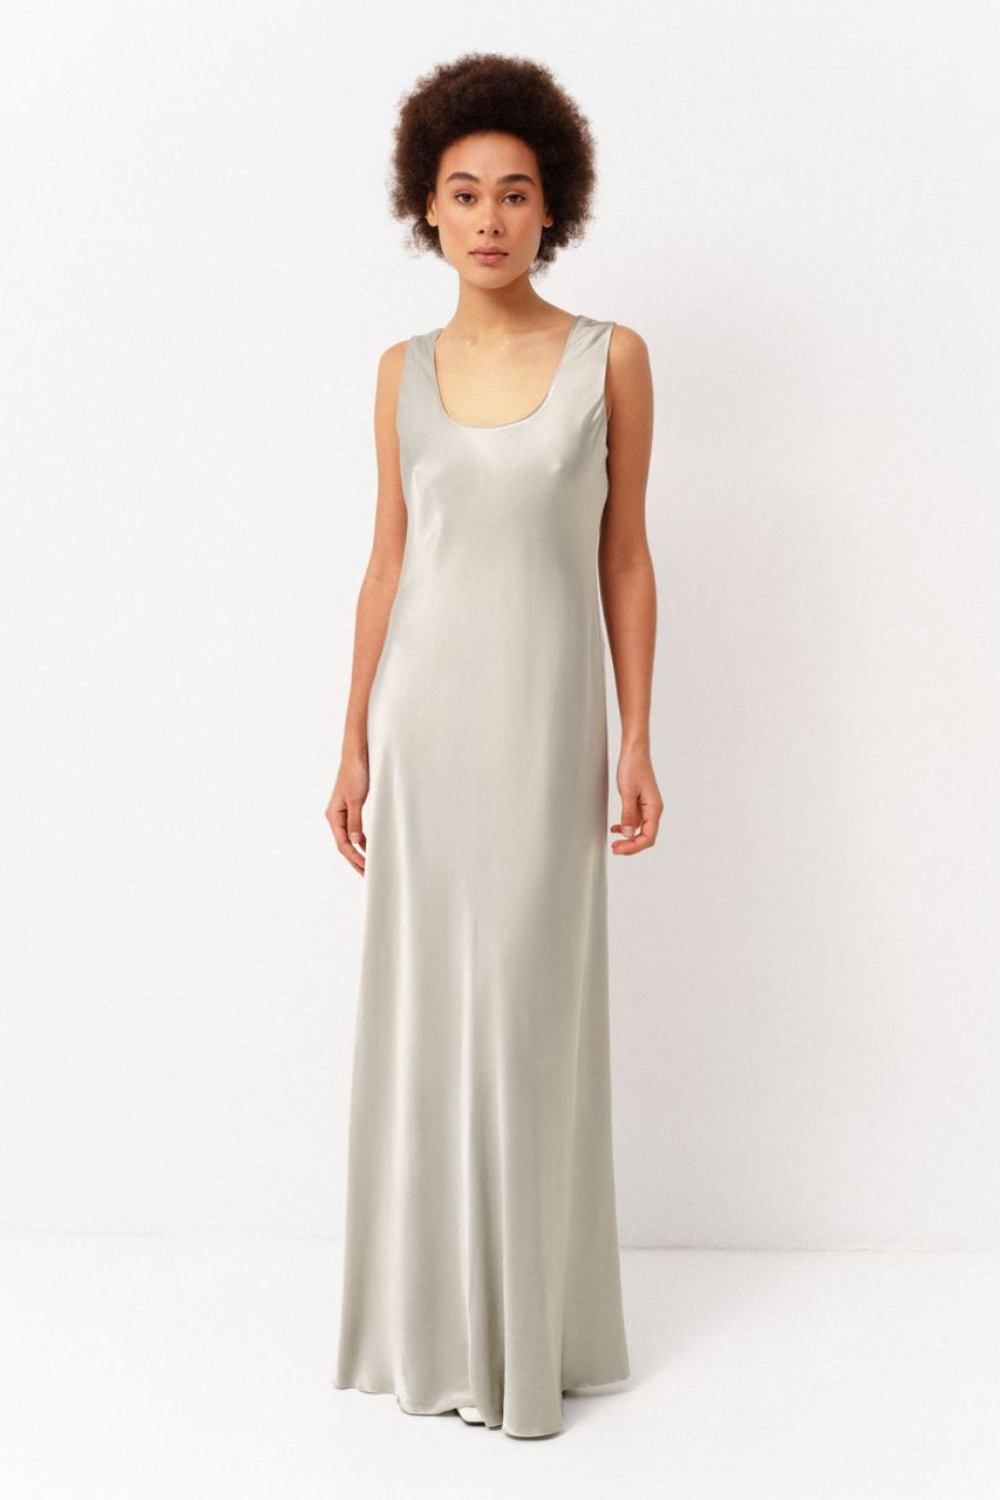 Šaty slip dress, olivová, (Corsis), 21-003O